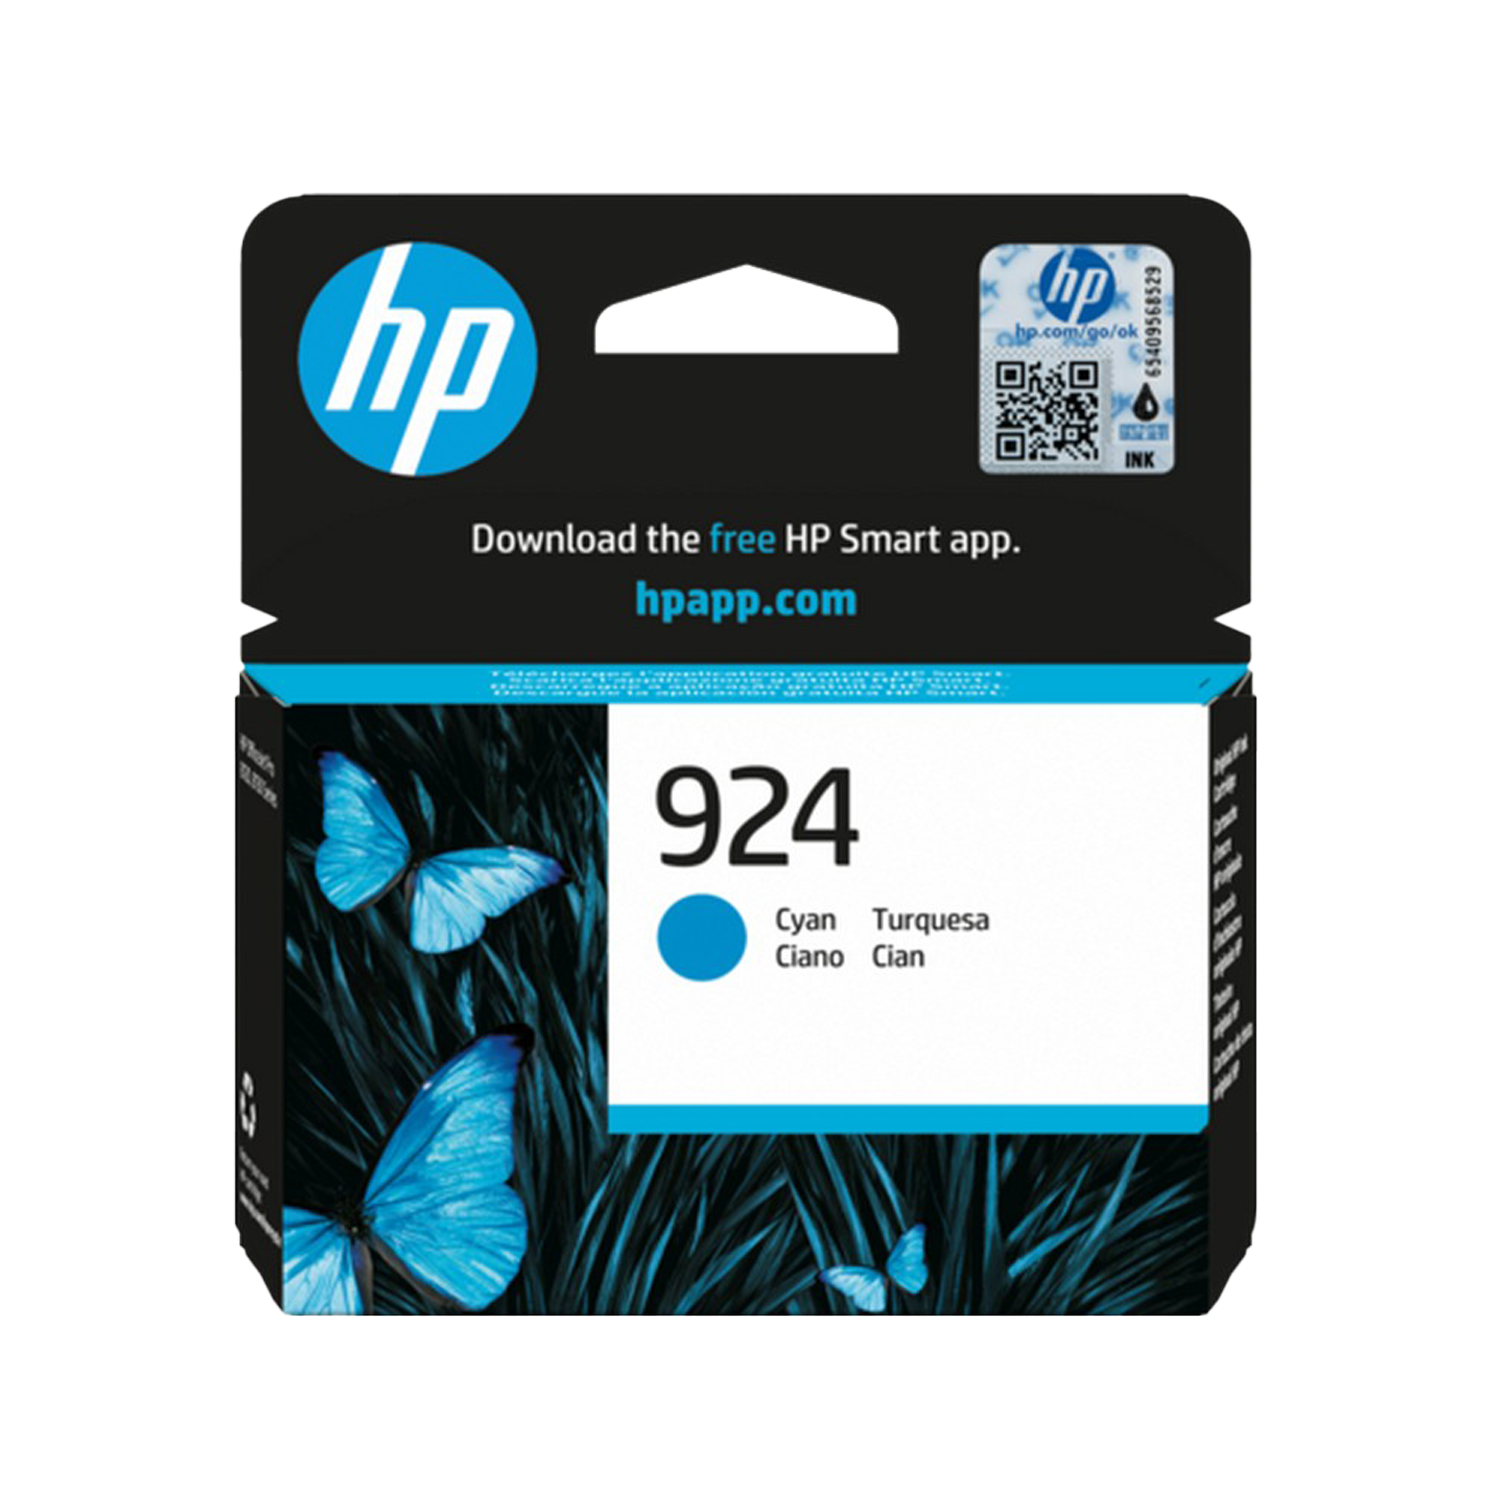 ראש דיו ציאן סדרה 924 4K0U3NE למדפסת דגם HP OfficeJet Pro 8133 All-in-One  מק”ט יצרן: 4K0U3NE תפוקת עמודים: 400 עמודים סדרה: HP924 צבע מחסנית הדפסה: ציאן  התאמה למדפסות: HP OfficeJet Pro 8133 All-in-One